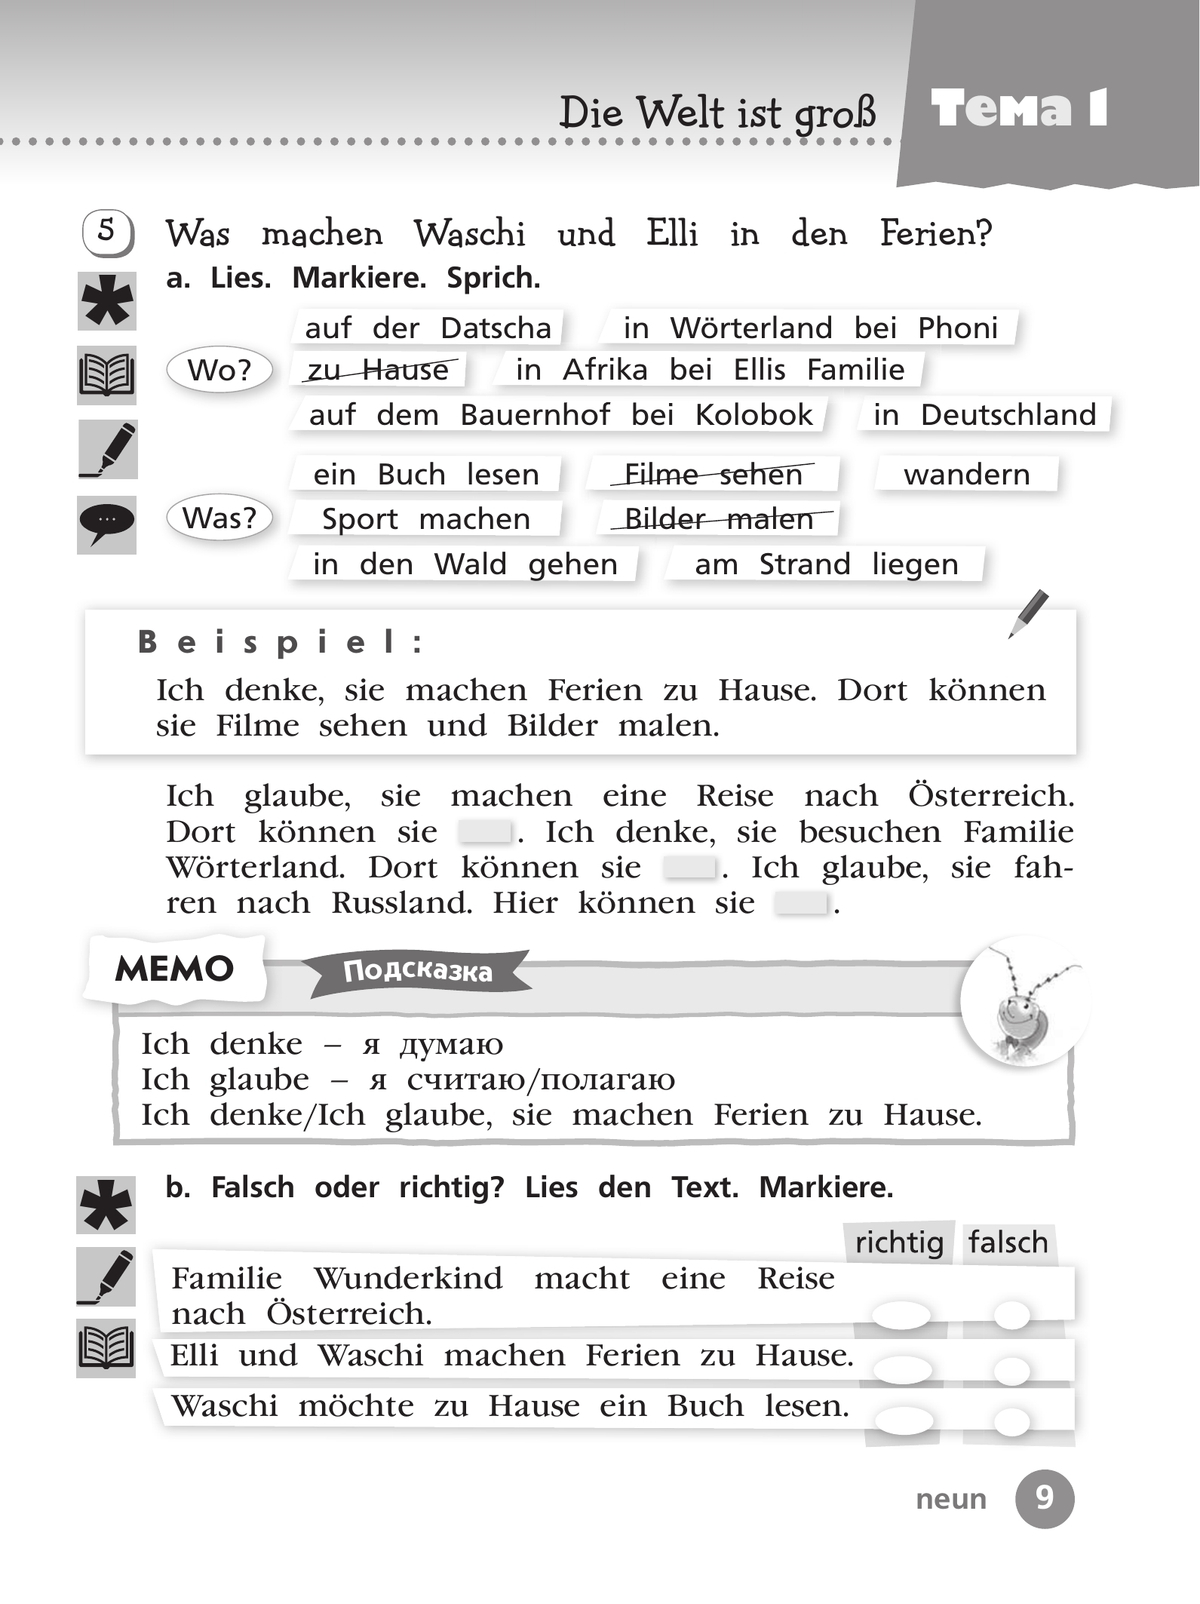 Немецкий язык. Рабочая тетрадь. 3 класс. В 2 ч. Часть 1 5